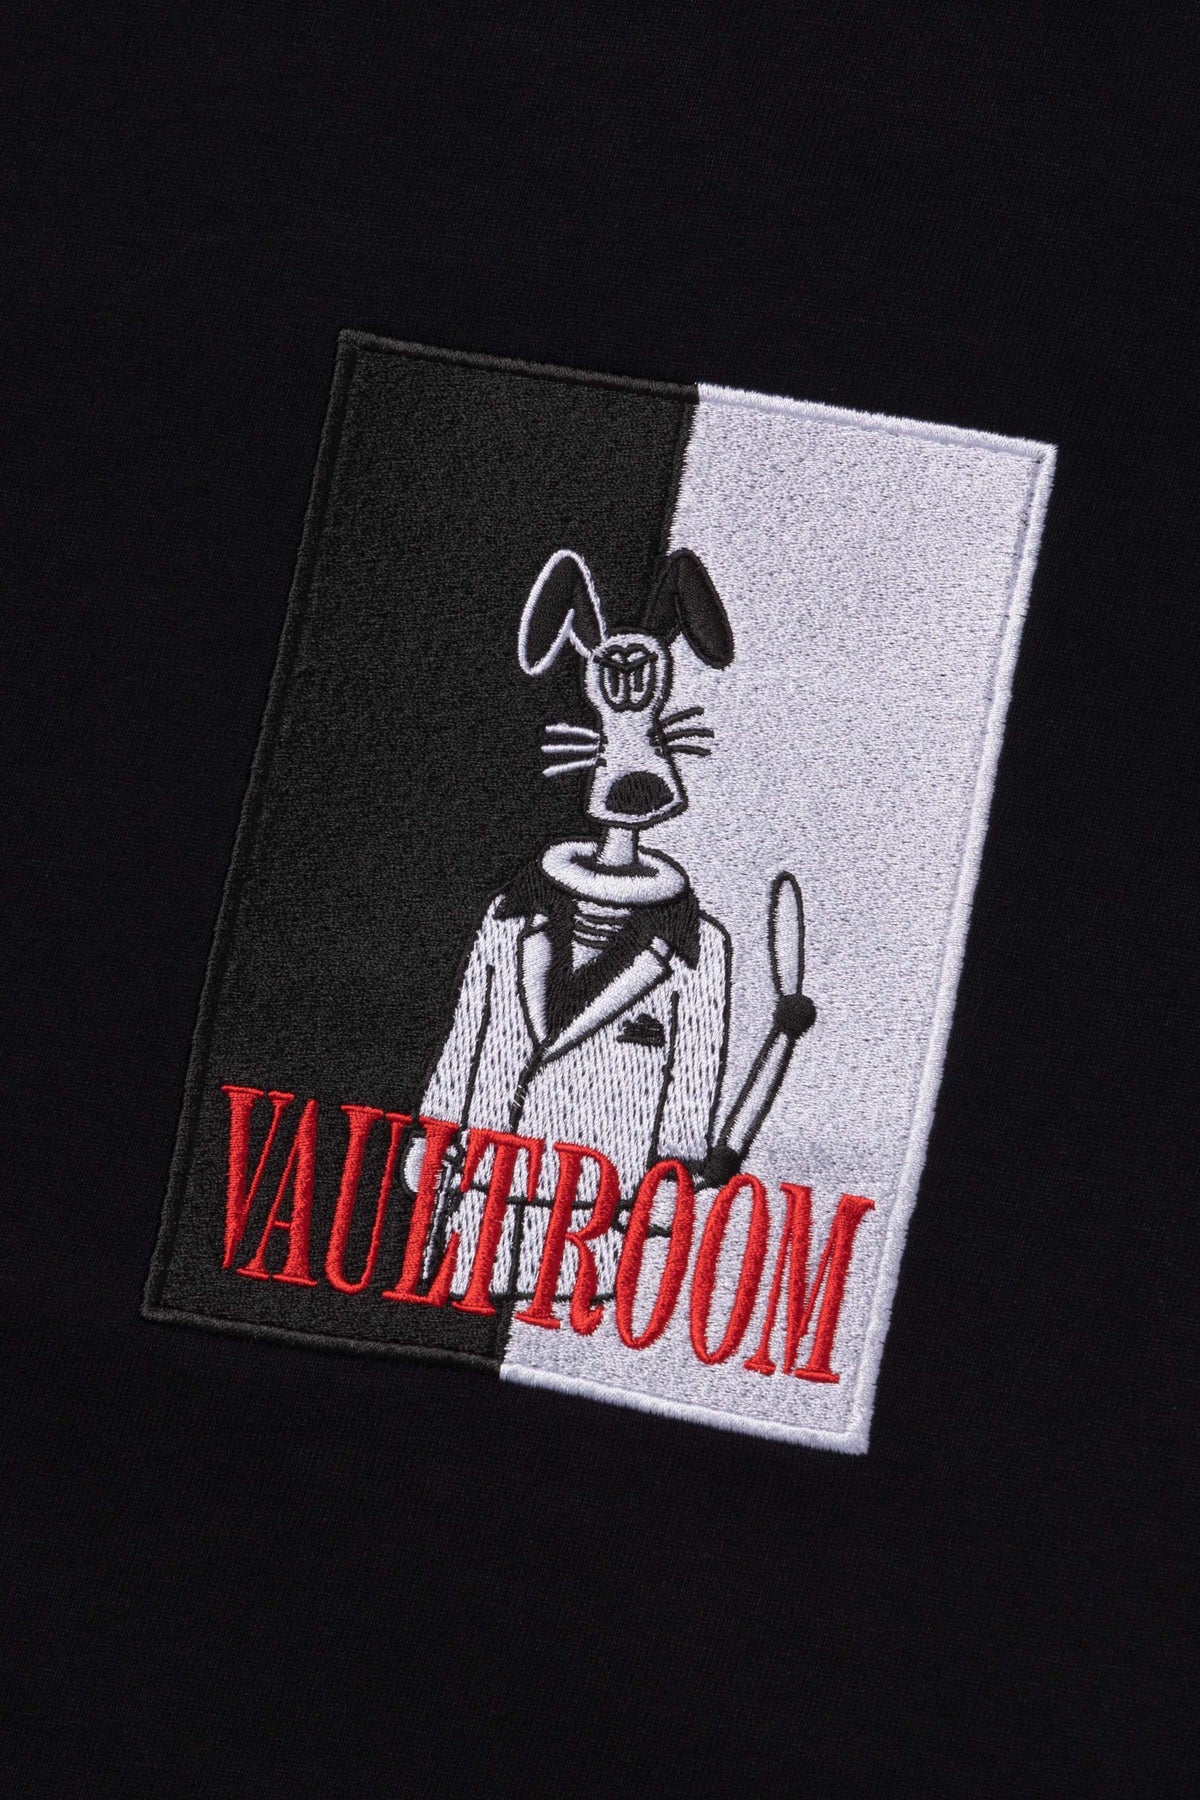 vaultroom keydog Tee